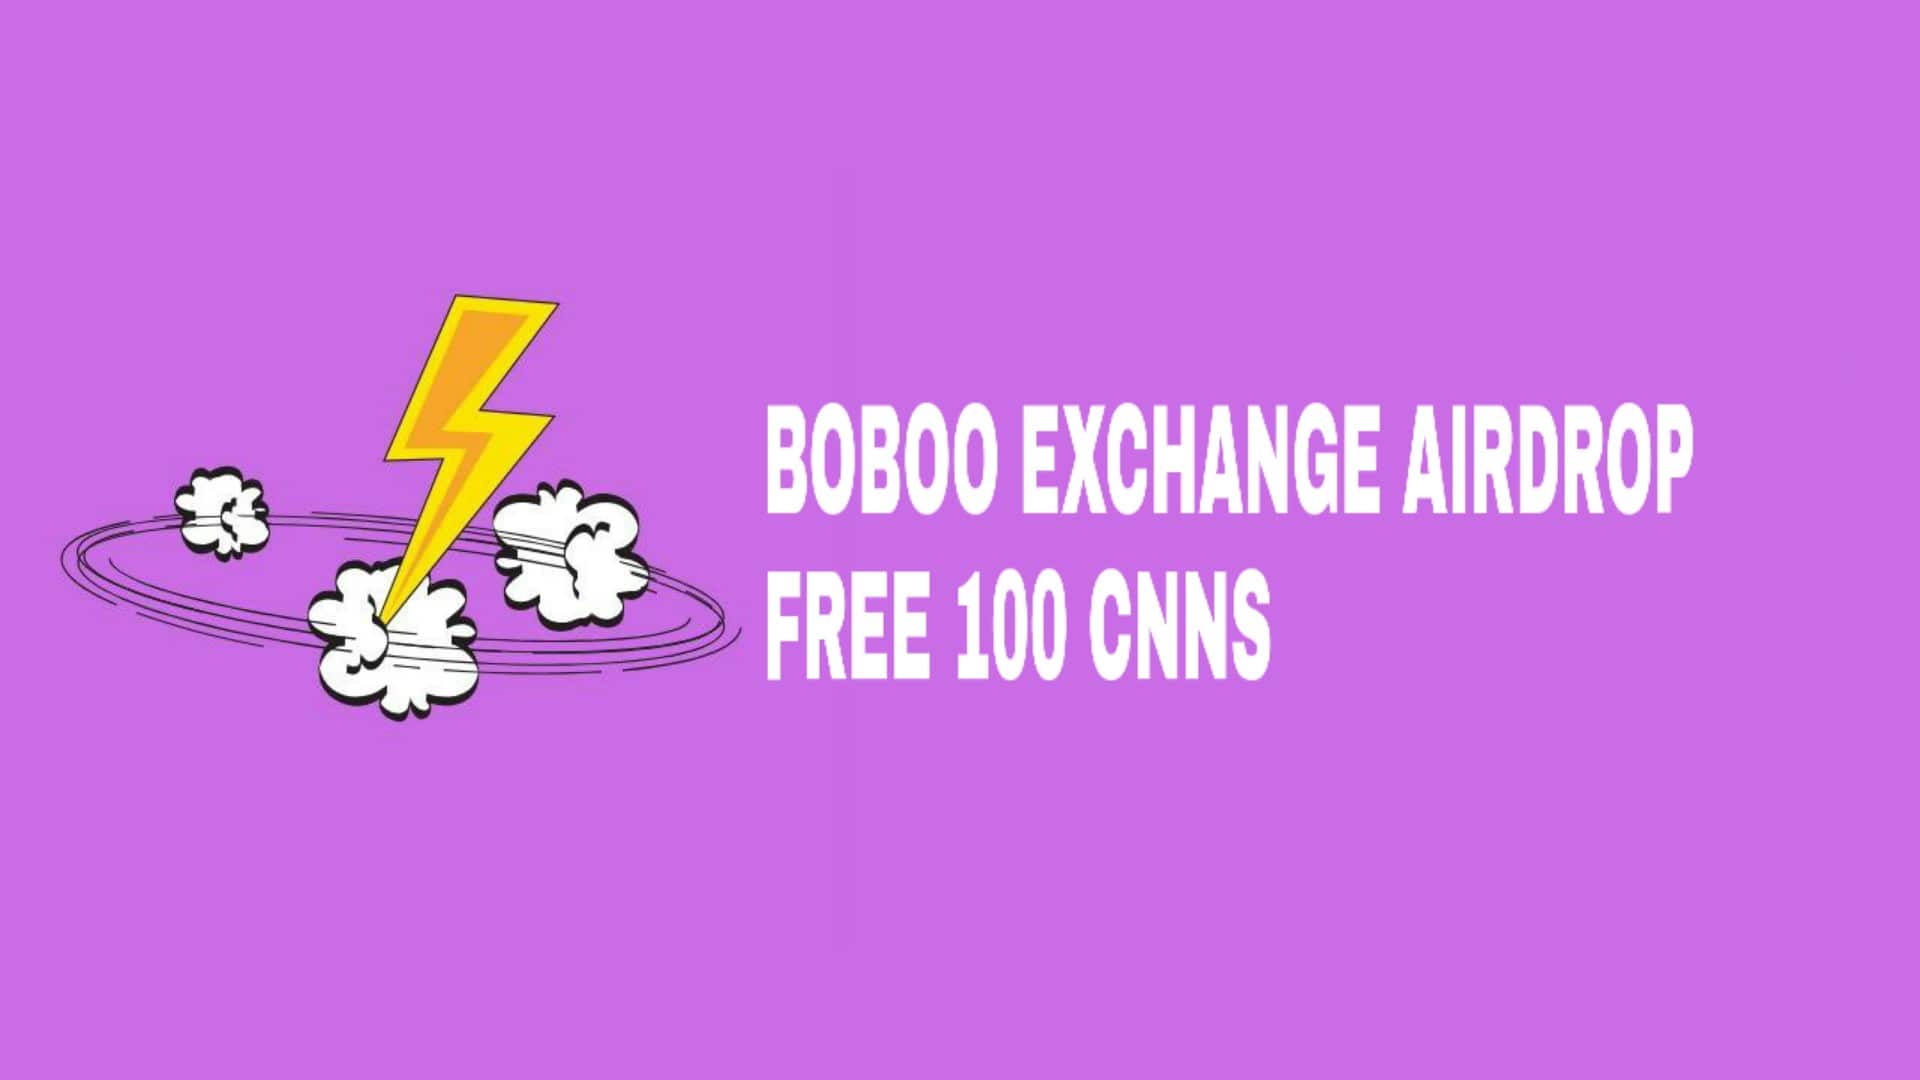 Airdrop Terbaru: Gratis 100 CNNS Dari Boboo Exhange | Silahkan Join Karena Sangat Legit